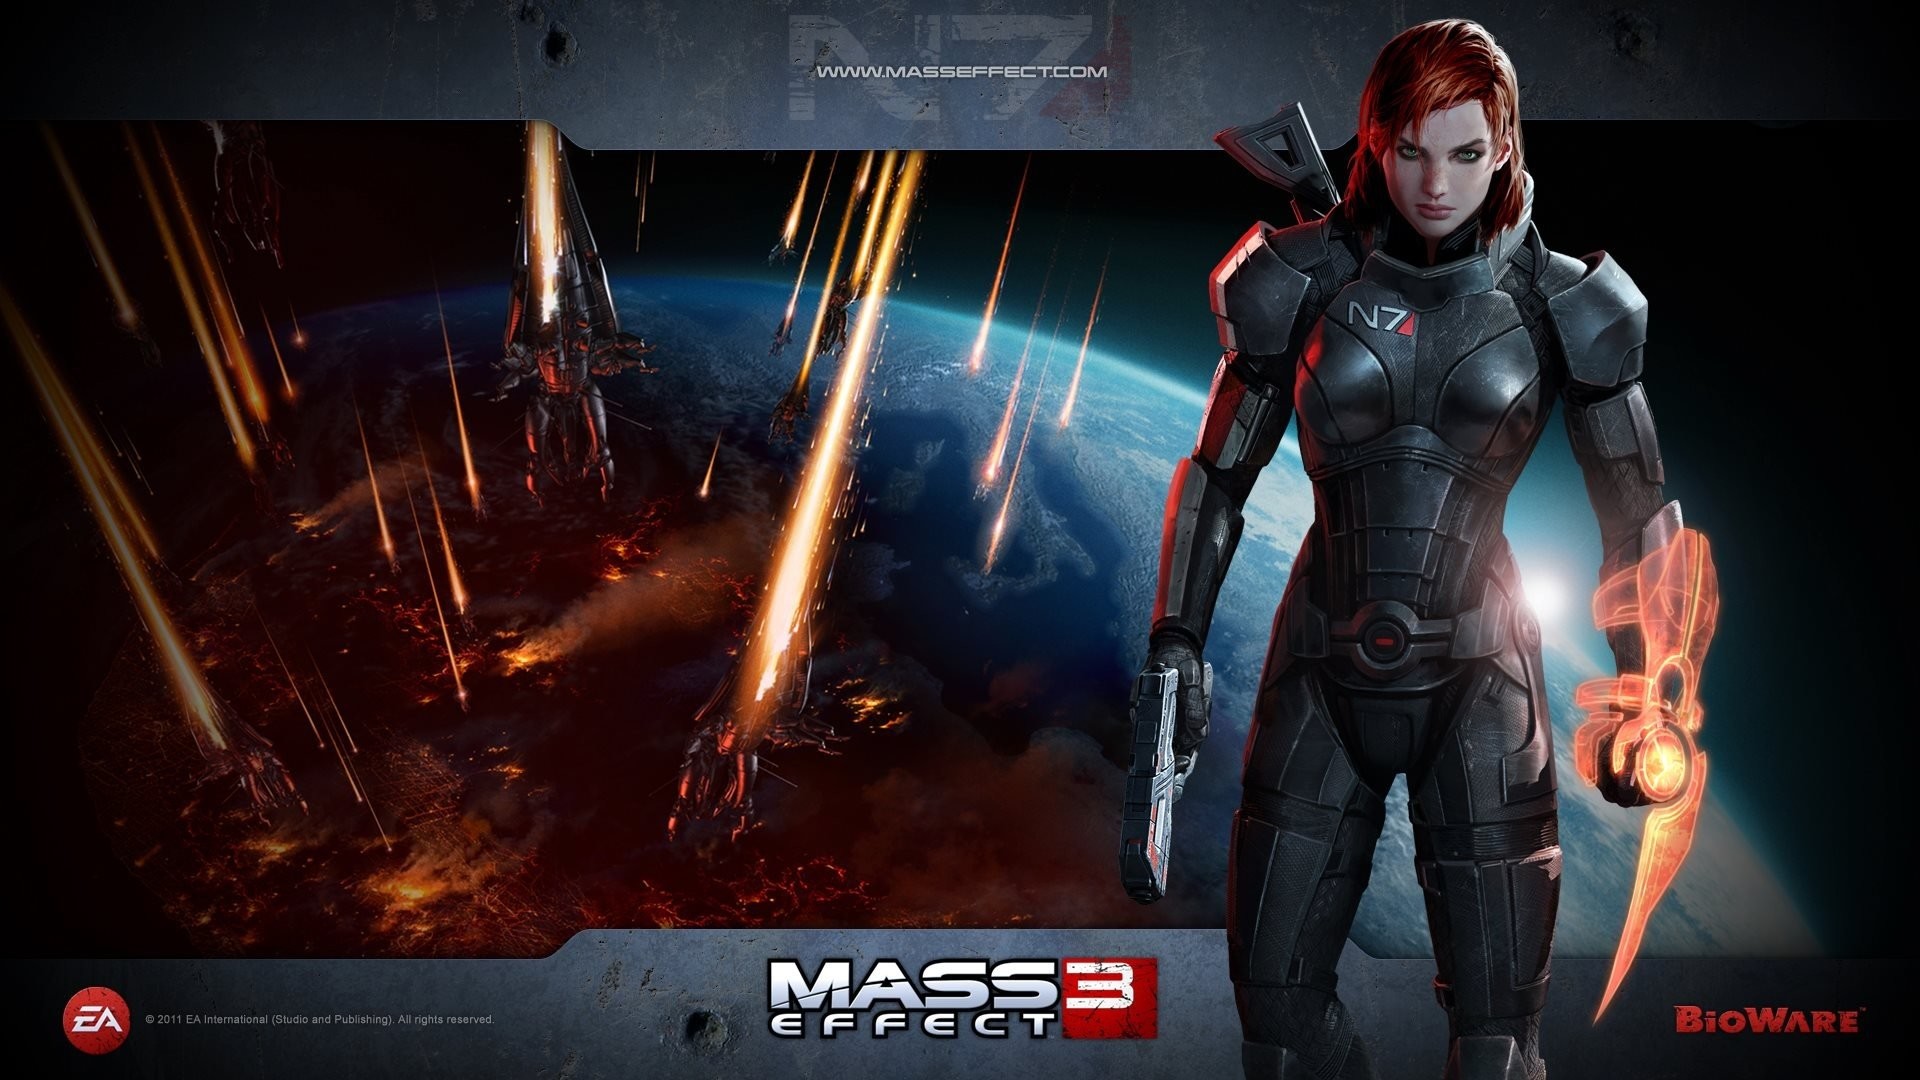 1920x1080 Wallpaper zu Mass Effect 3 herunterladen